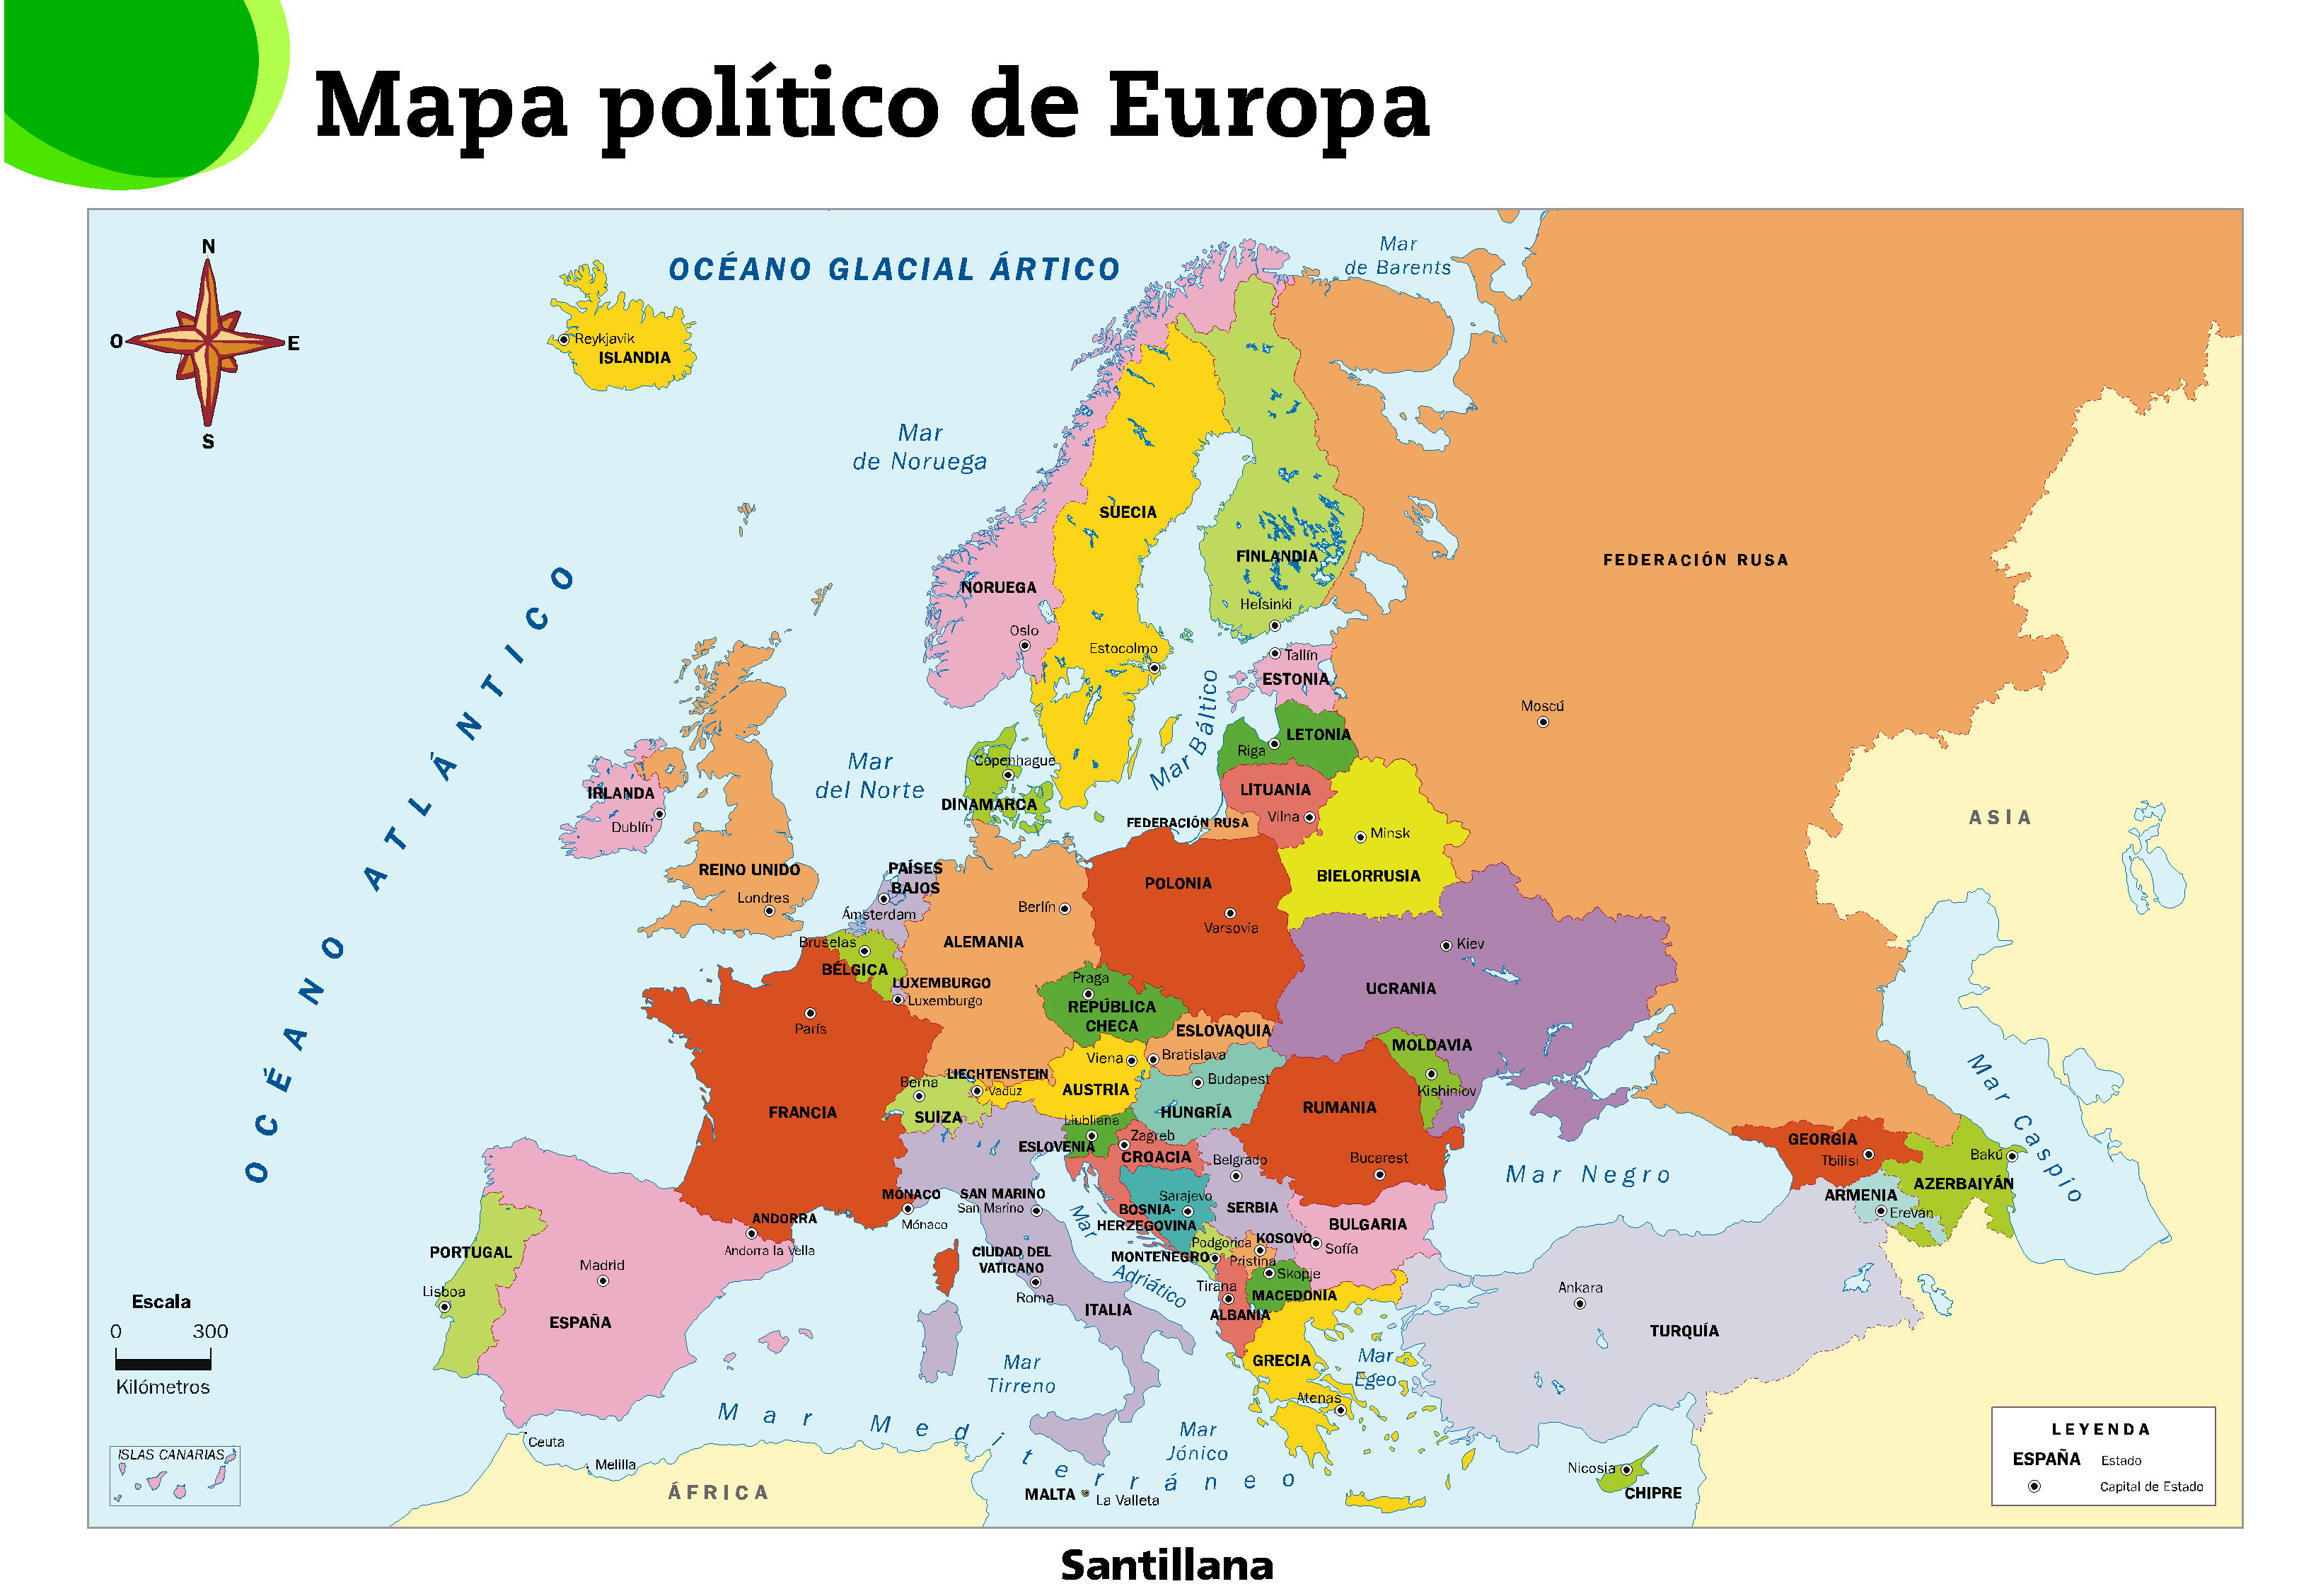 Infanta Catalina - 6th course 2014/2015: Mapa político de Europa - in